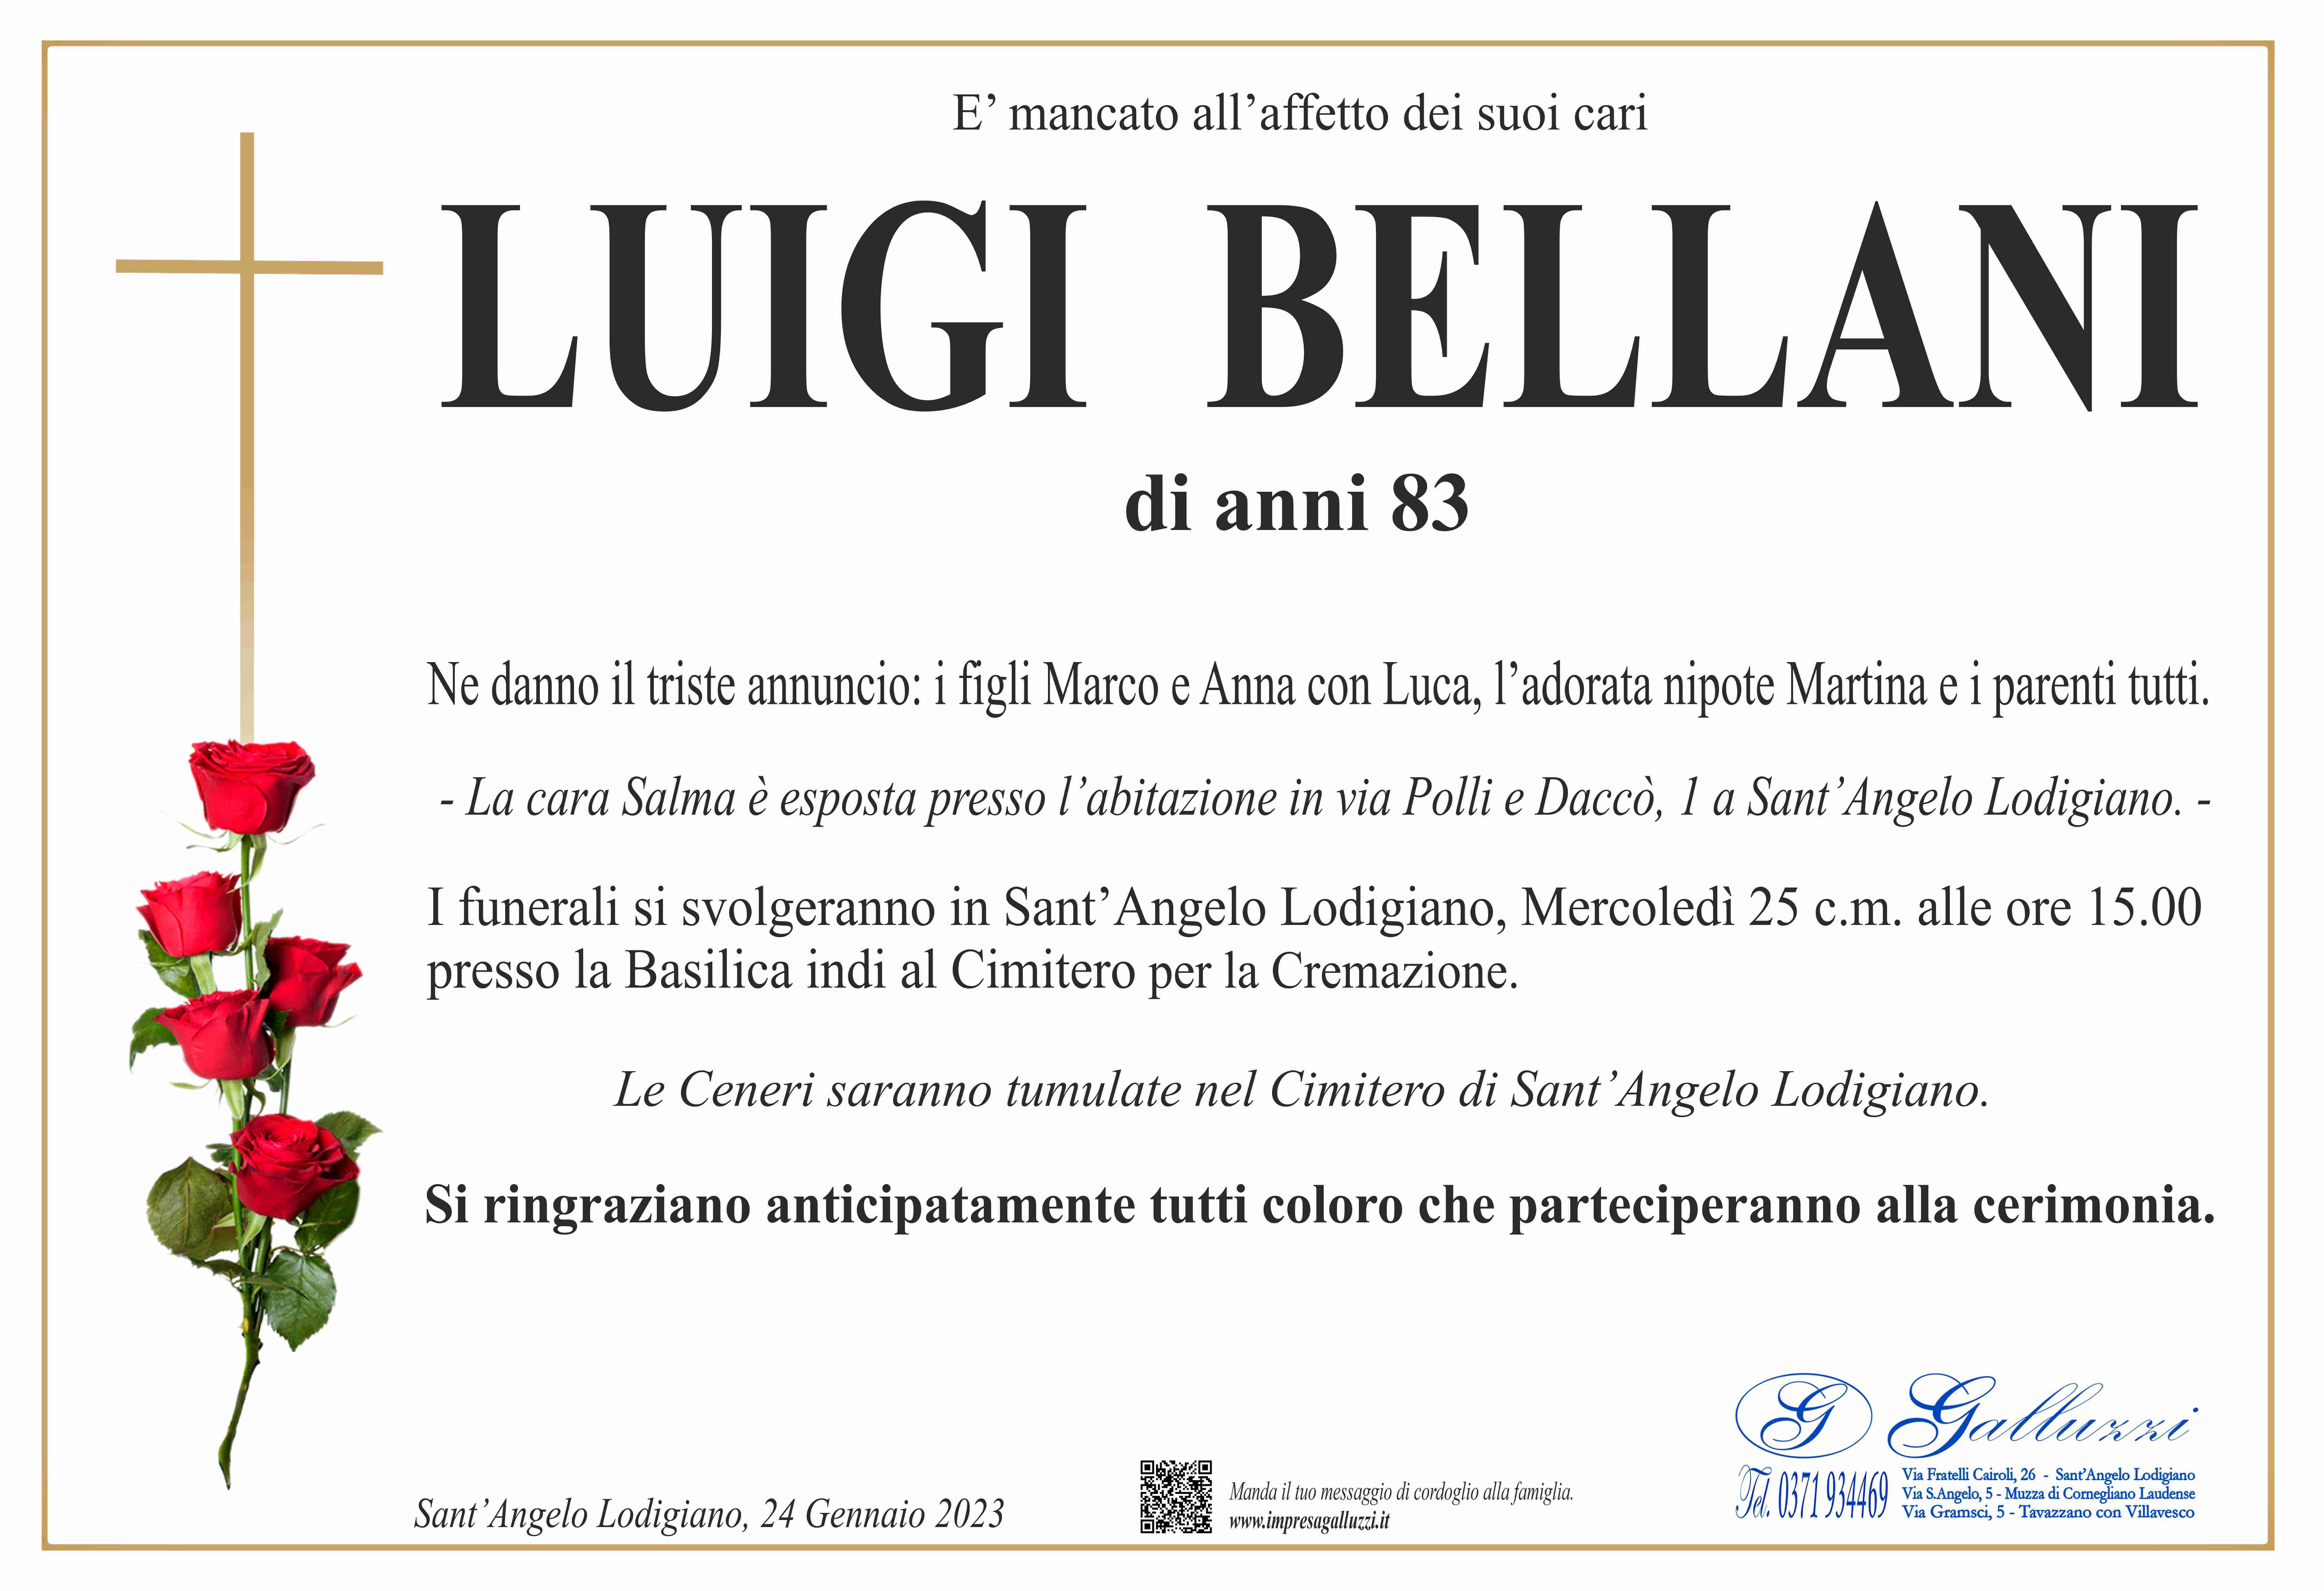 Luigi Bellani